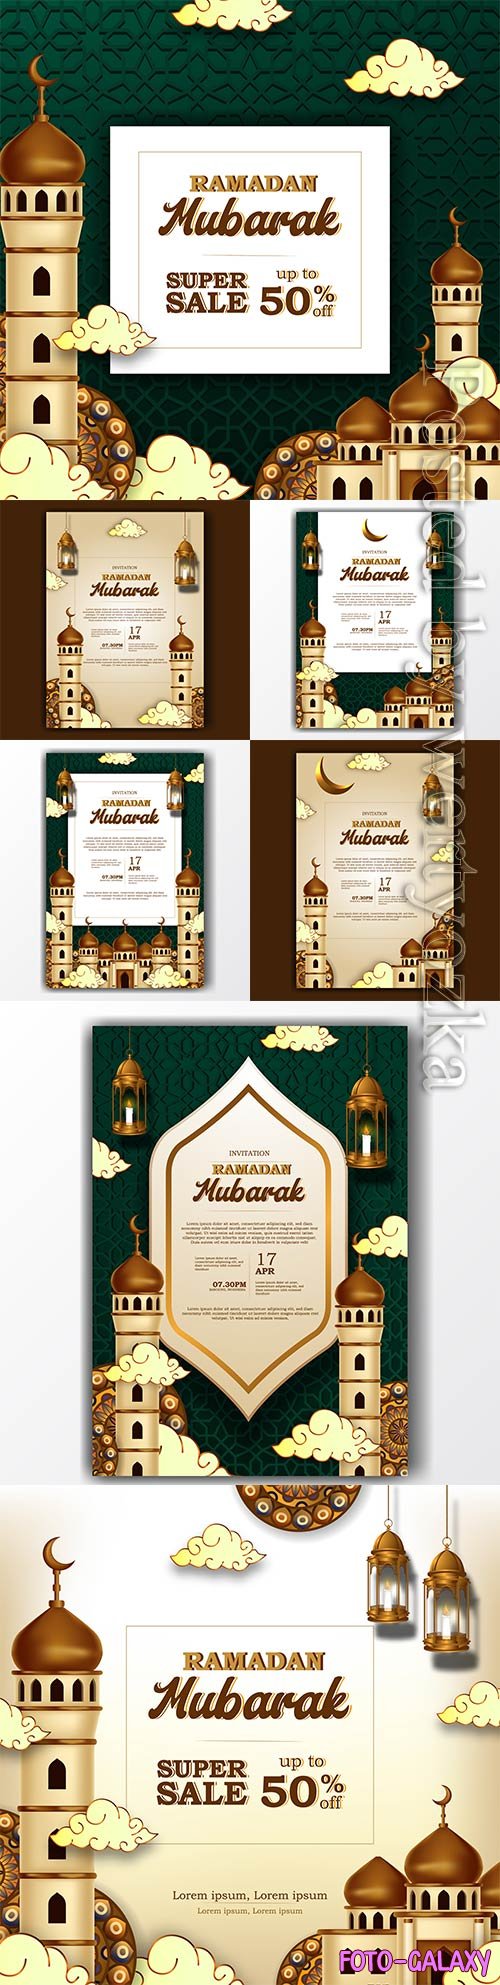 Ramadan mubarak invitation poster